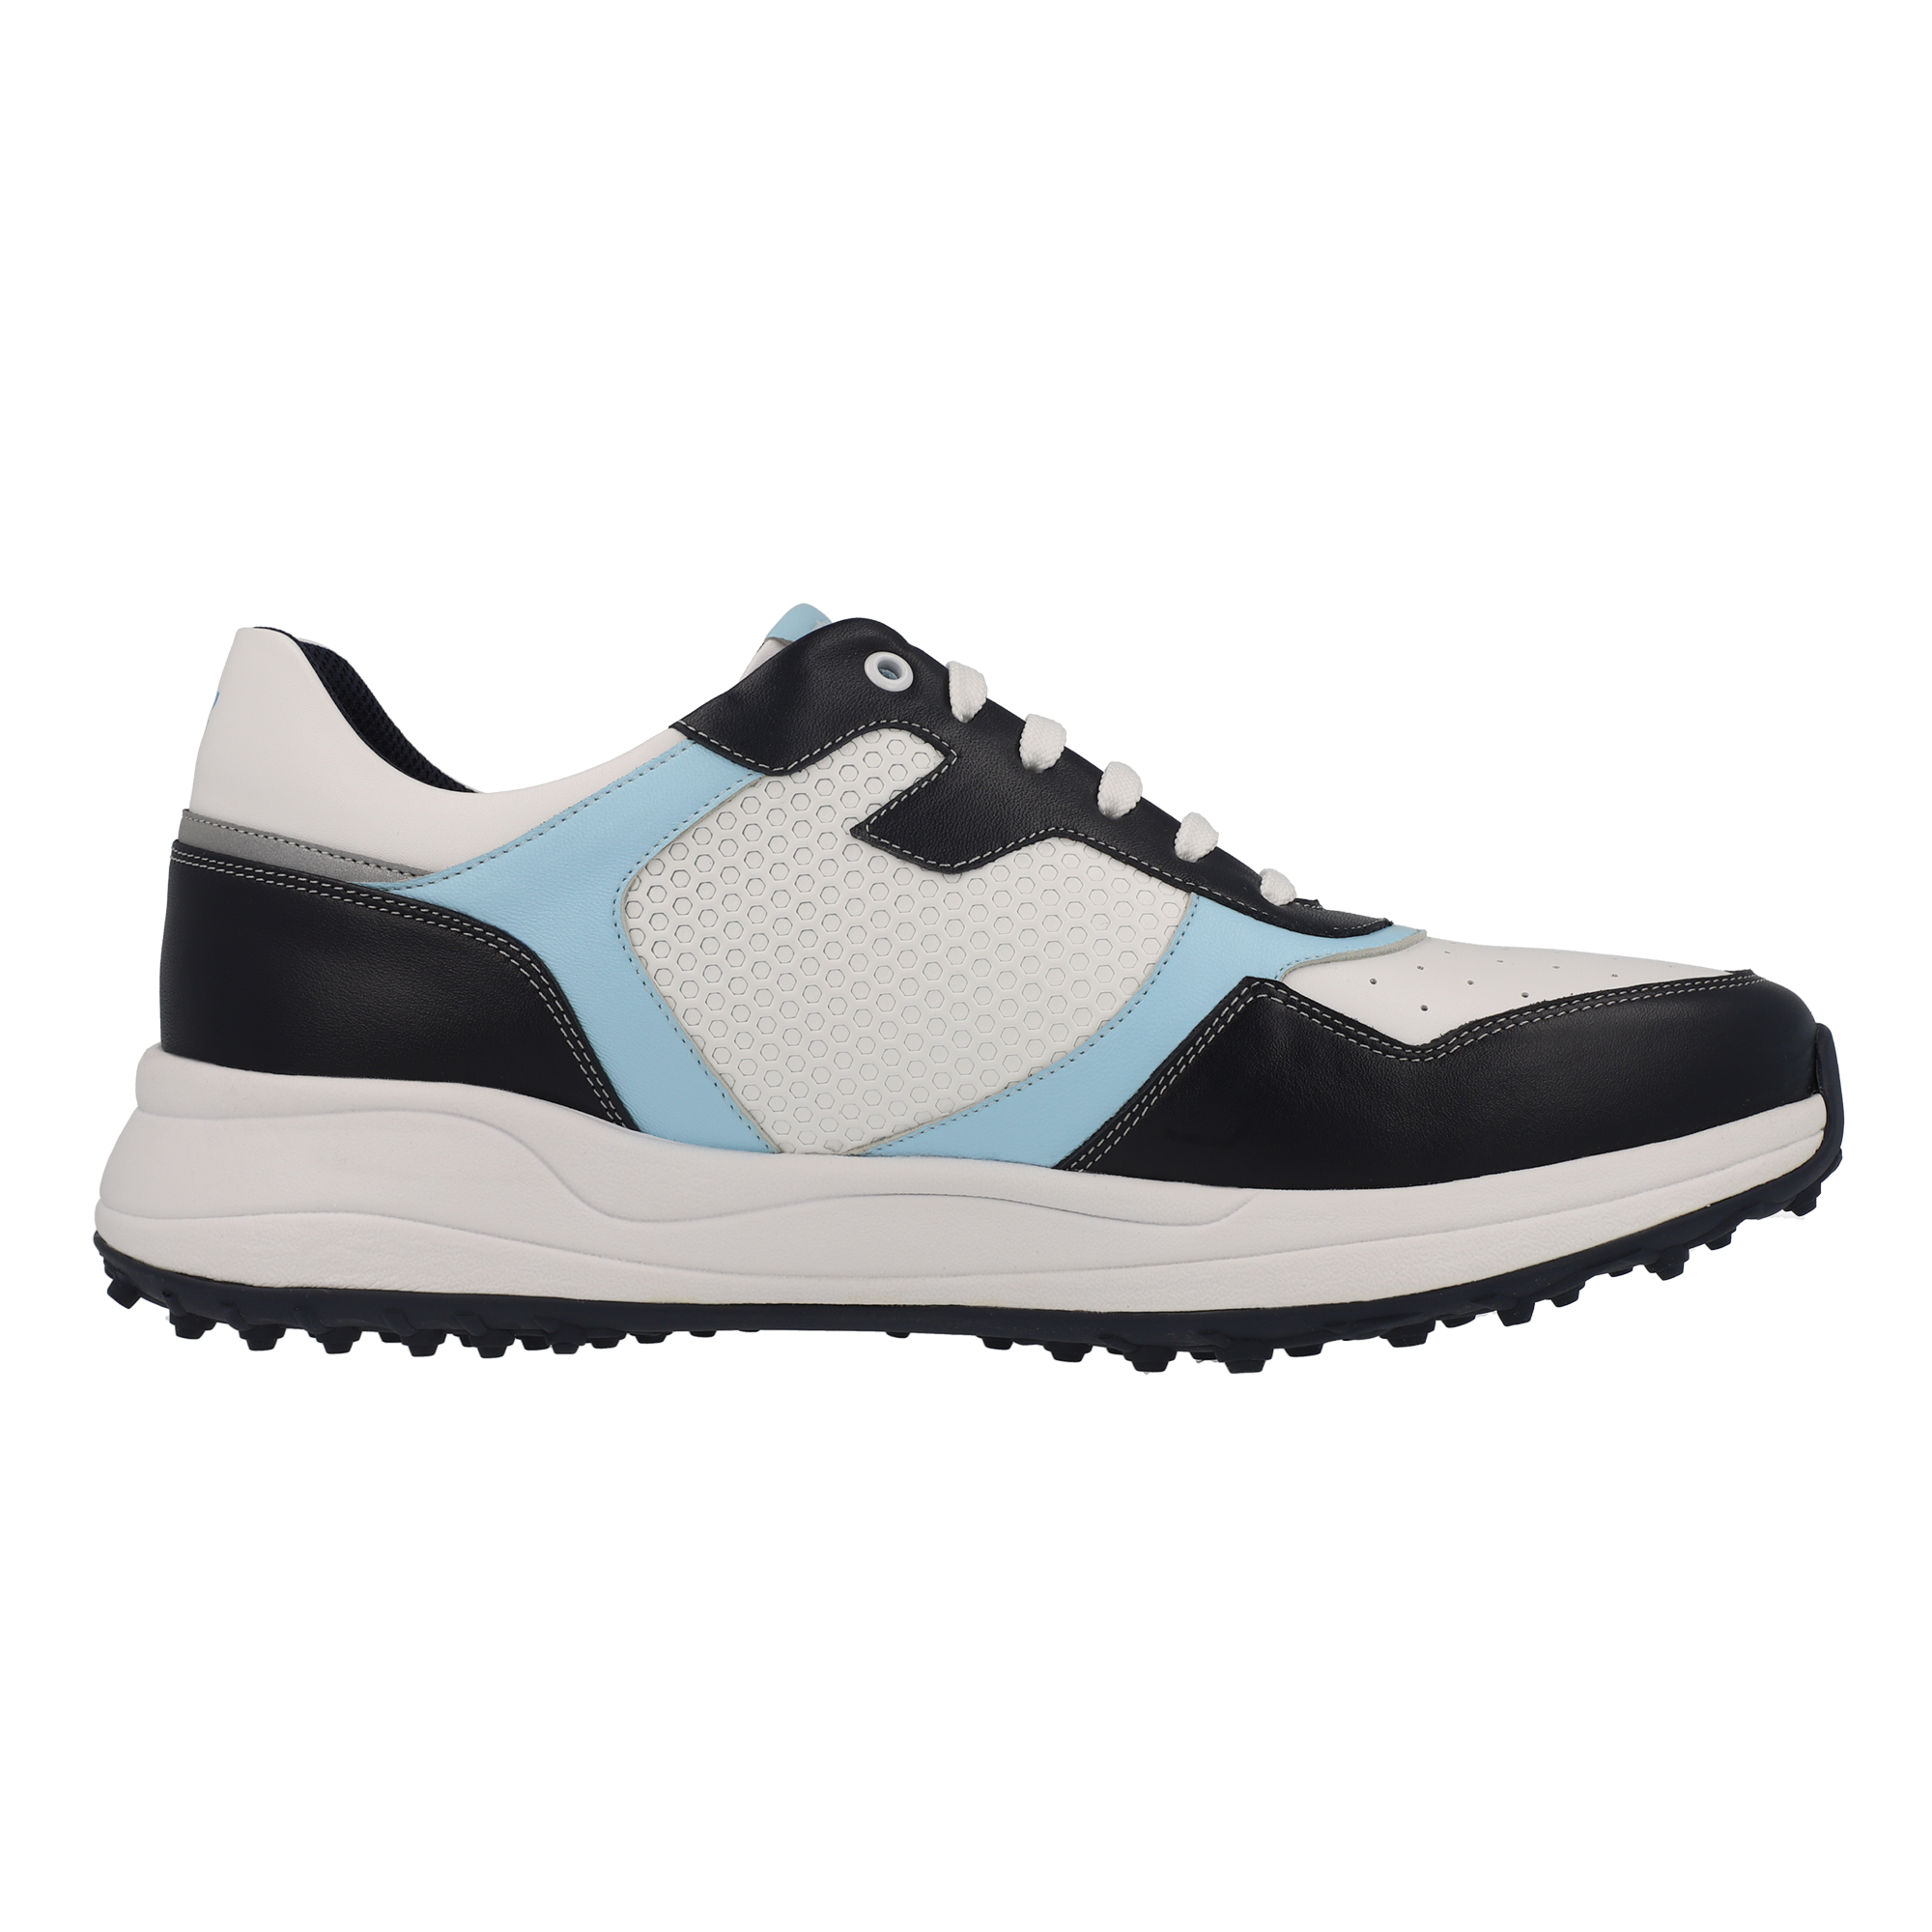 FITTEREST Spider Wave Golf Shoes for Men - FTR23 M SS NV104